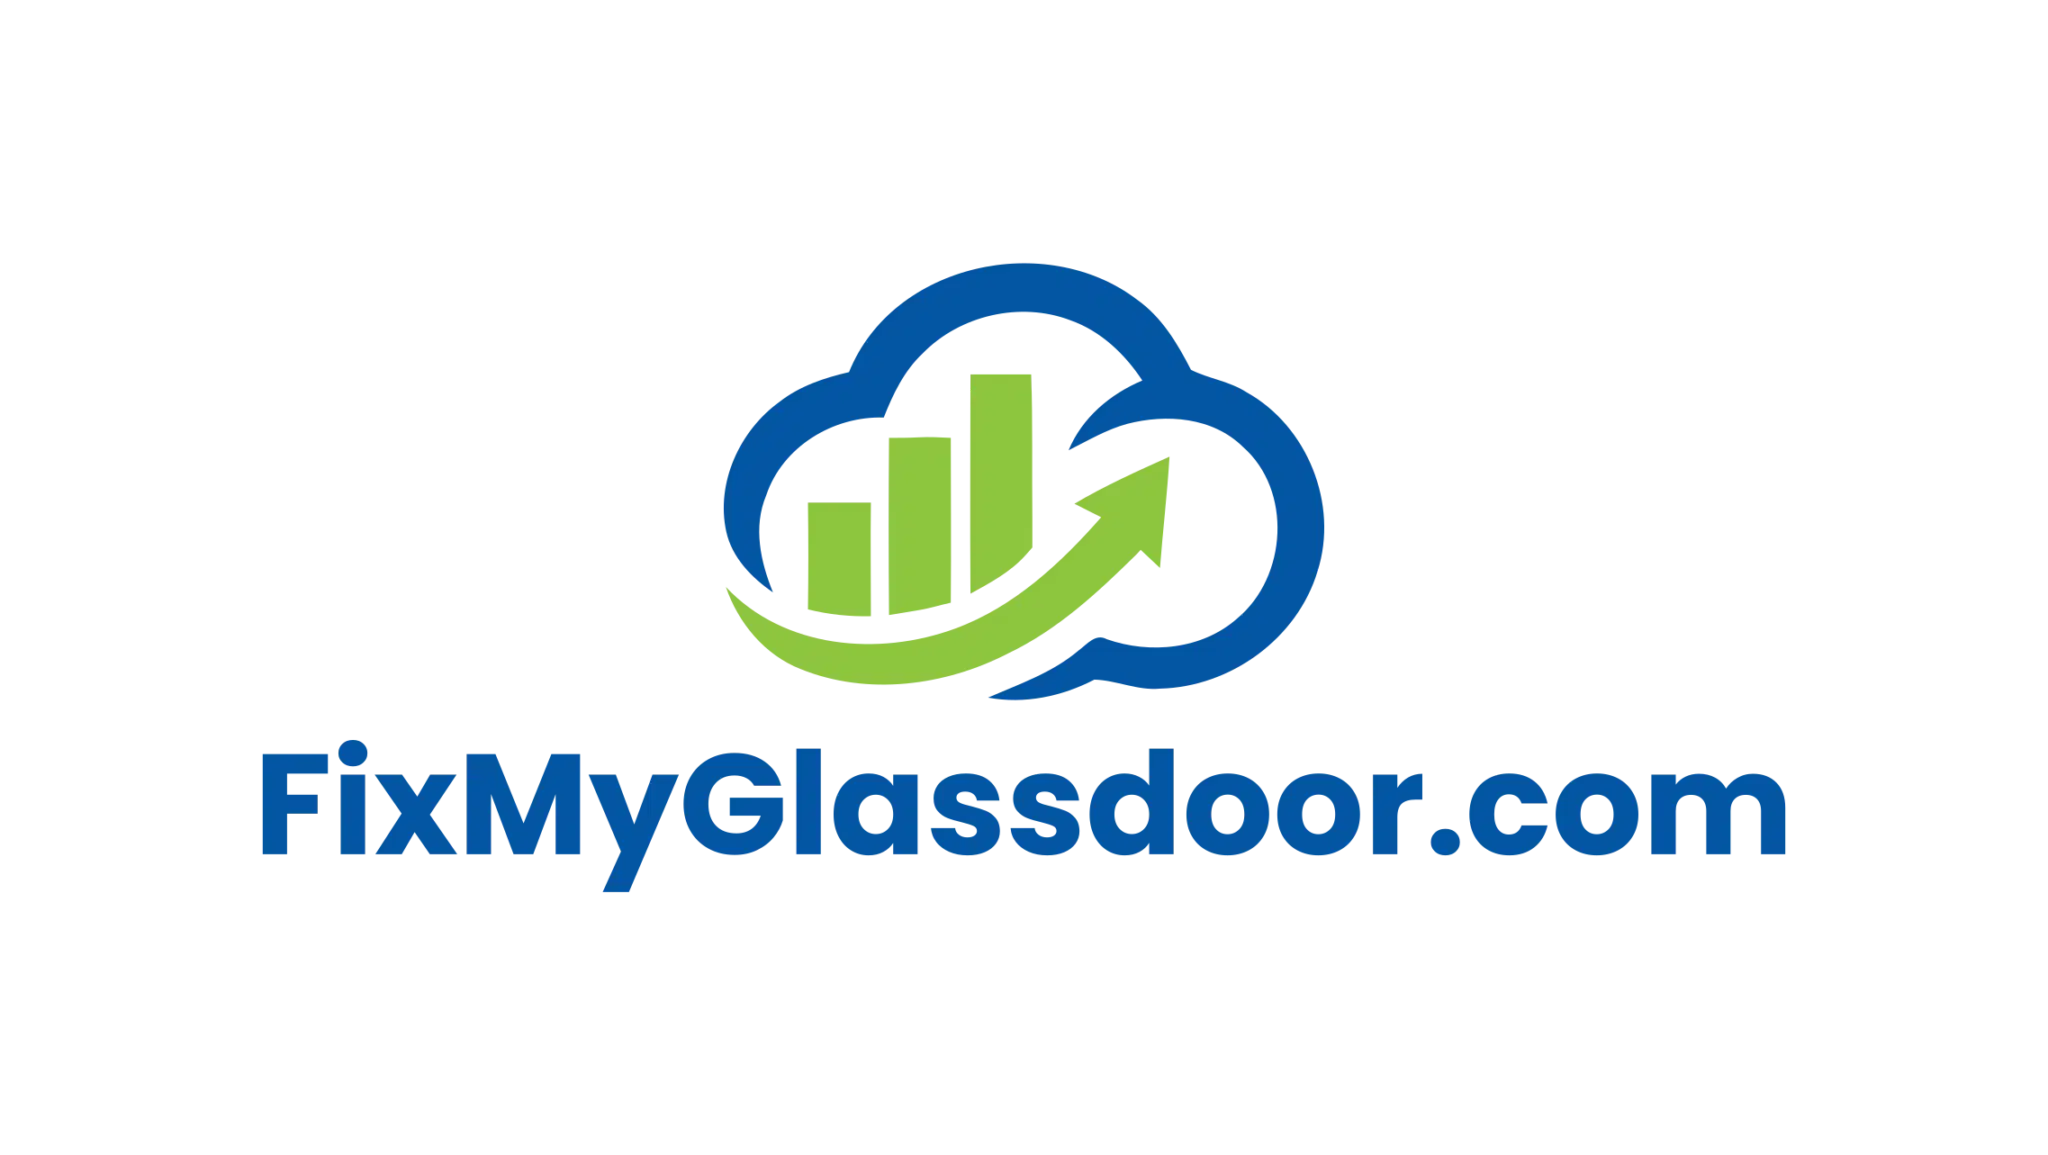 Fix My Glassdoor logo. End2End Wins helps companies improve their Glassdoor rating